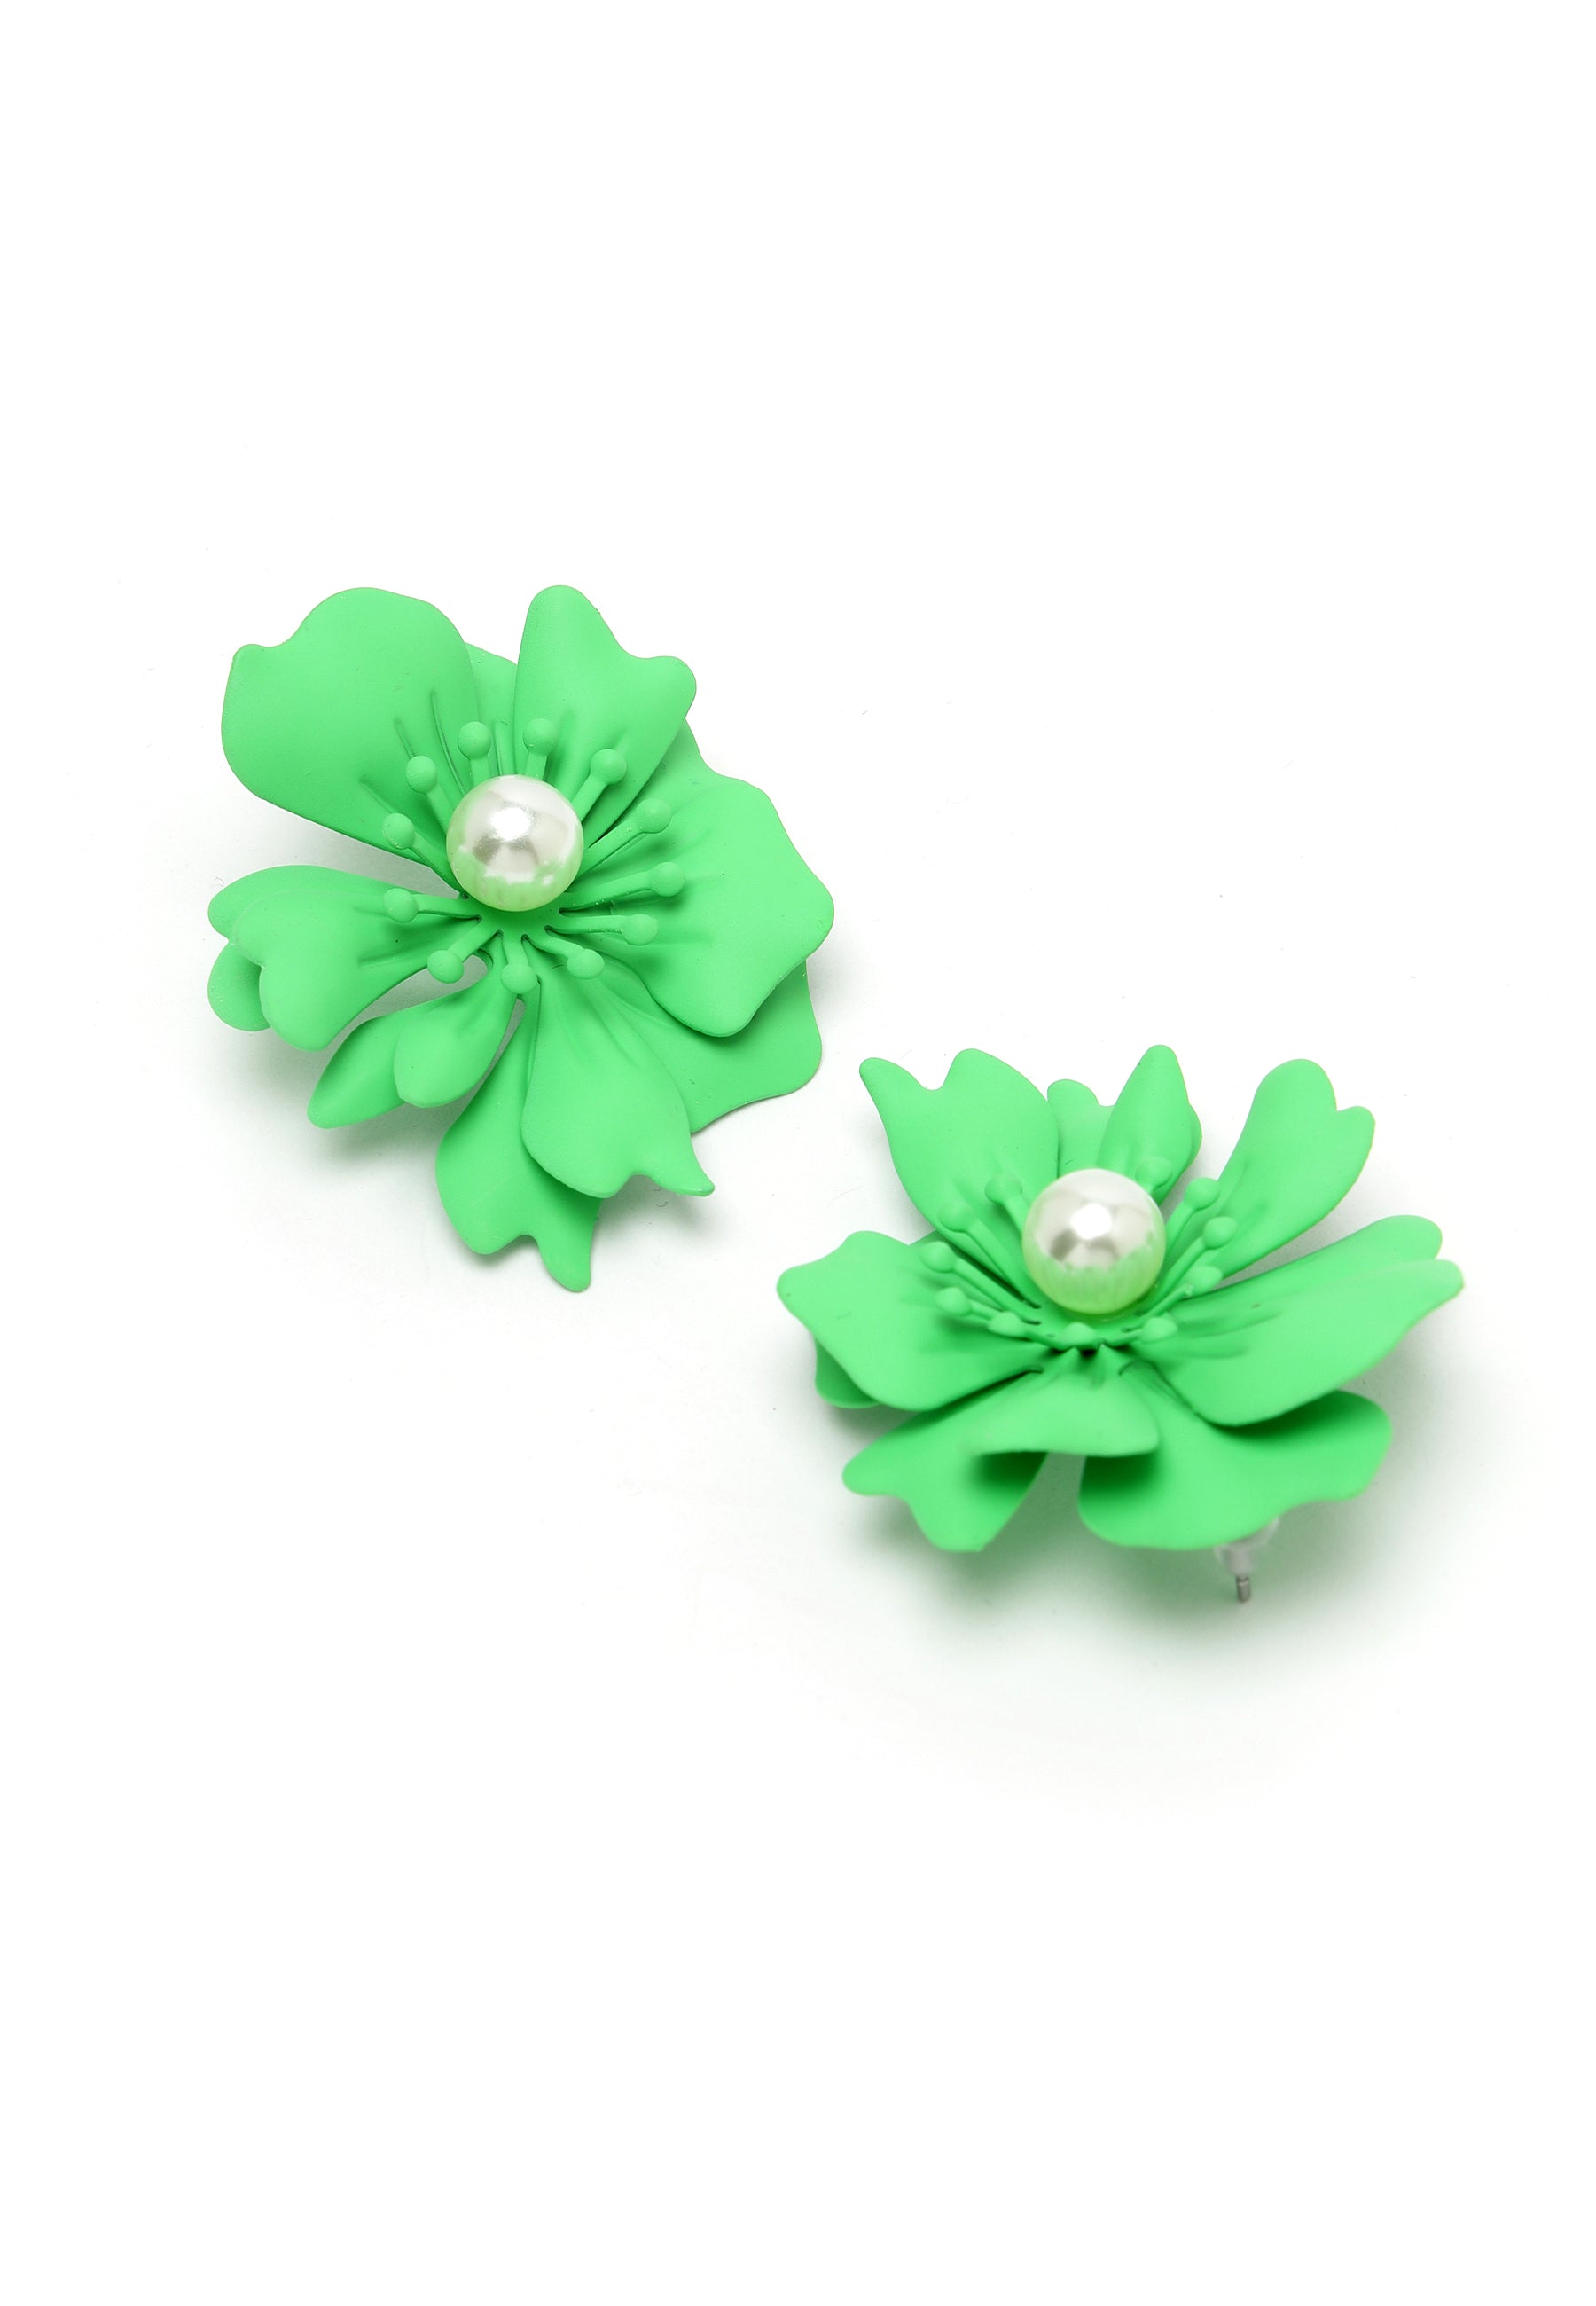 Floral Pearl Stud Earrings In Green